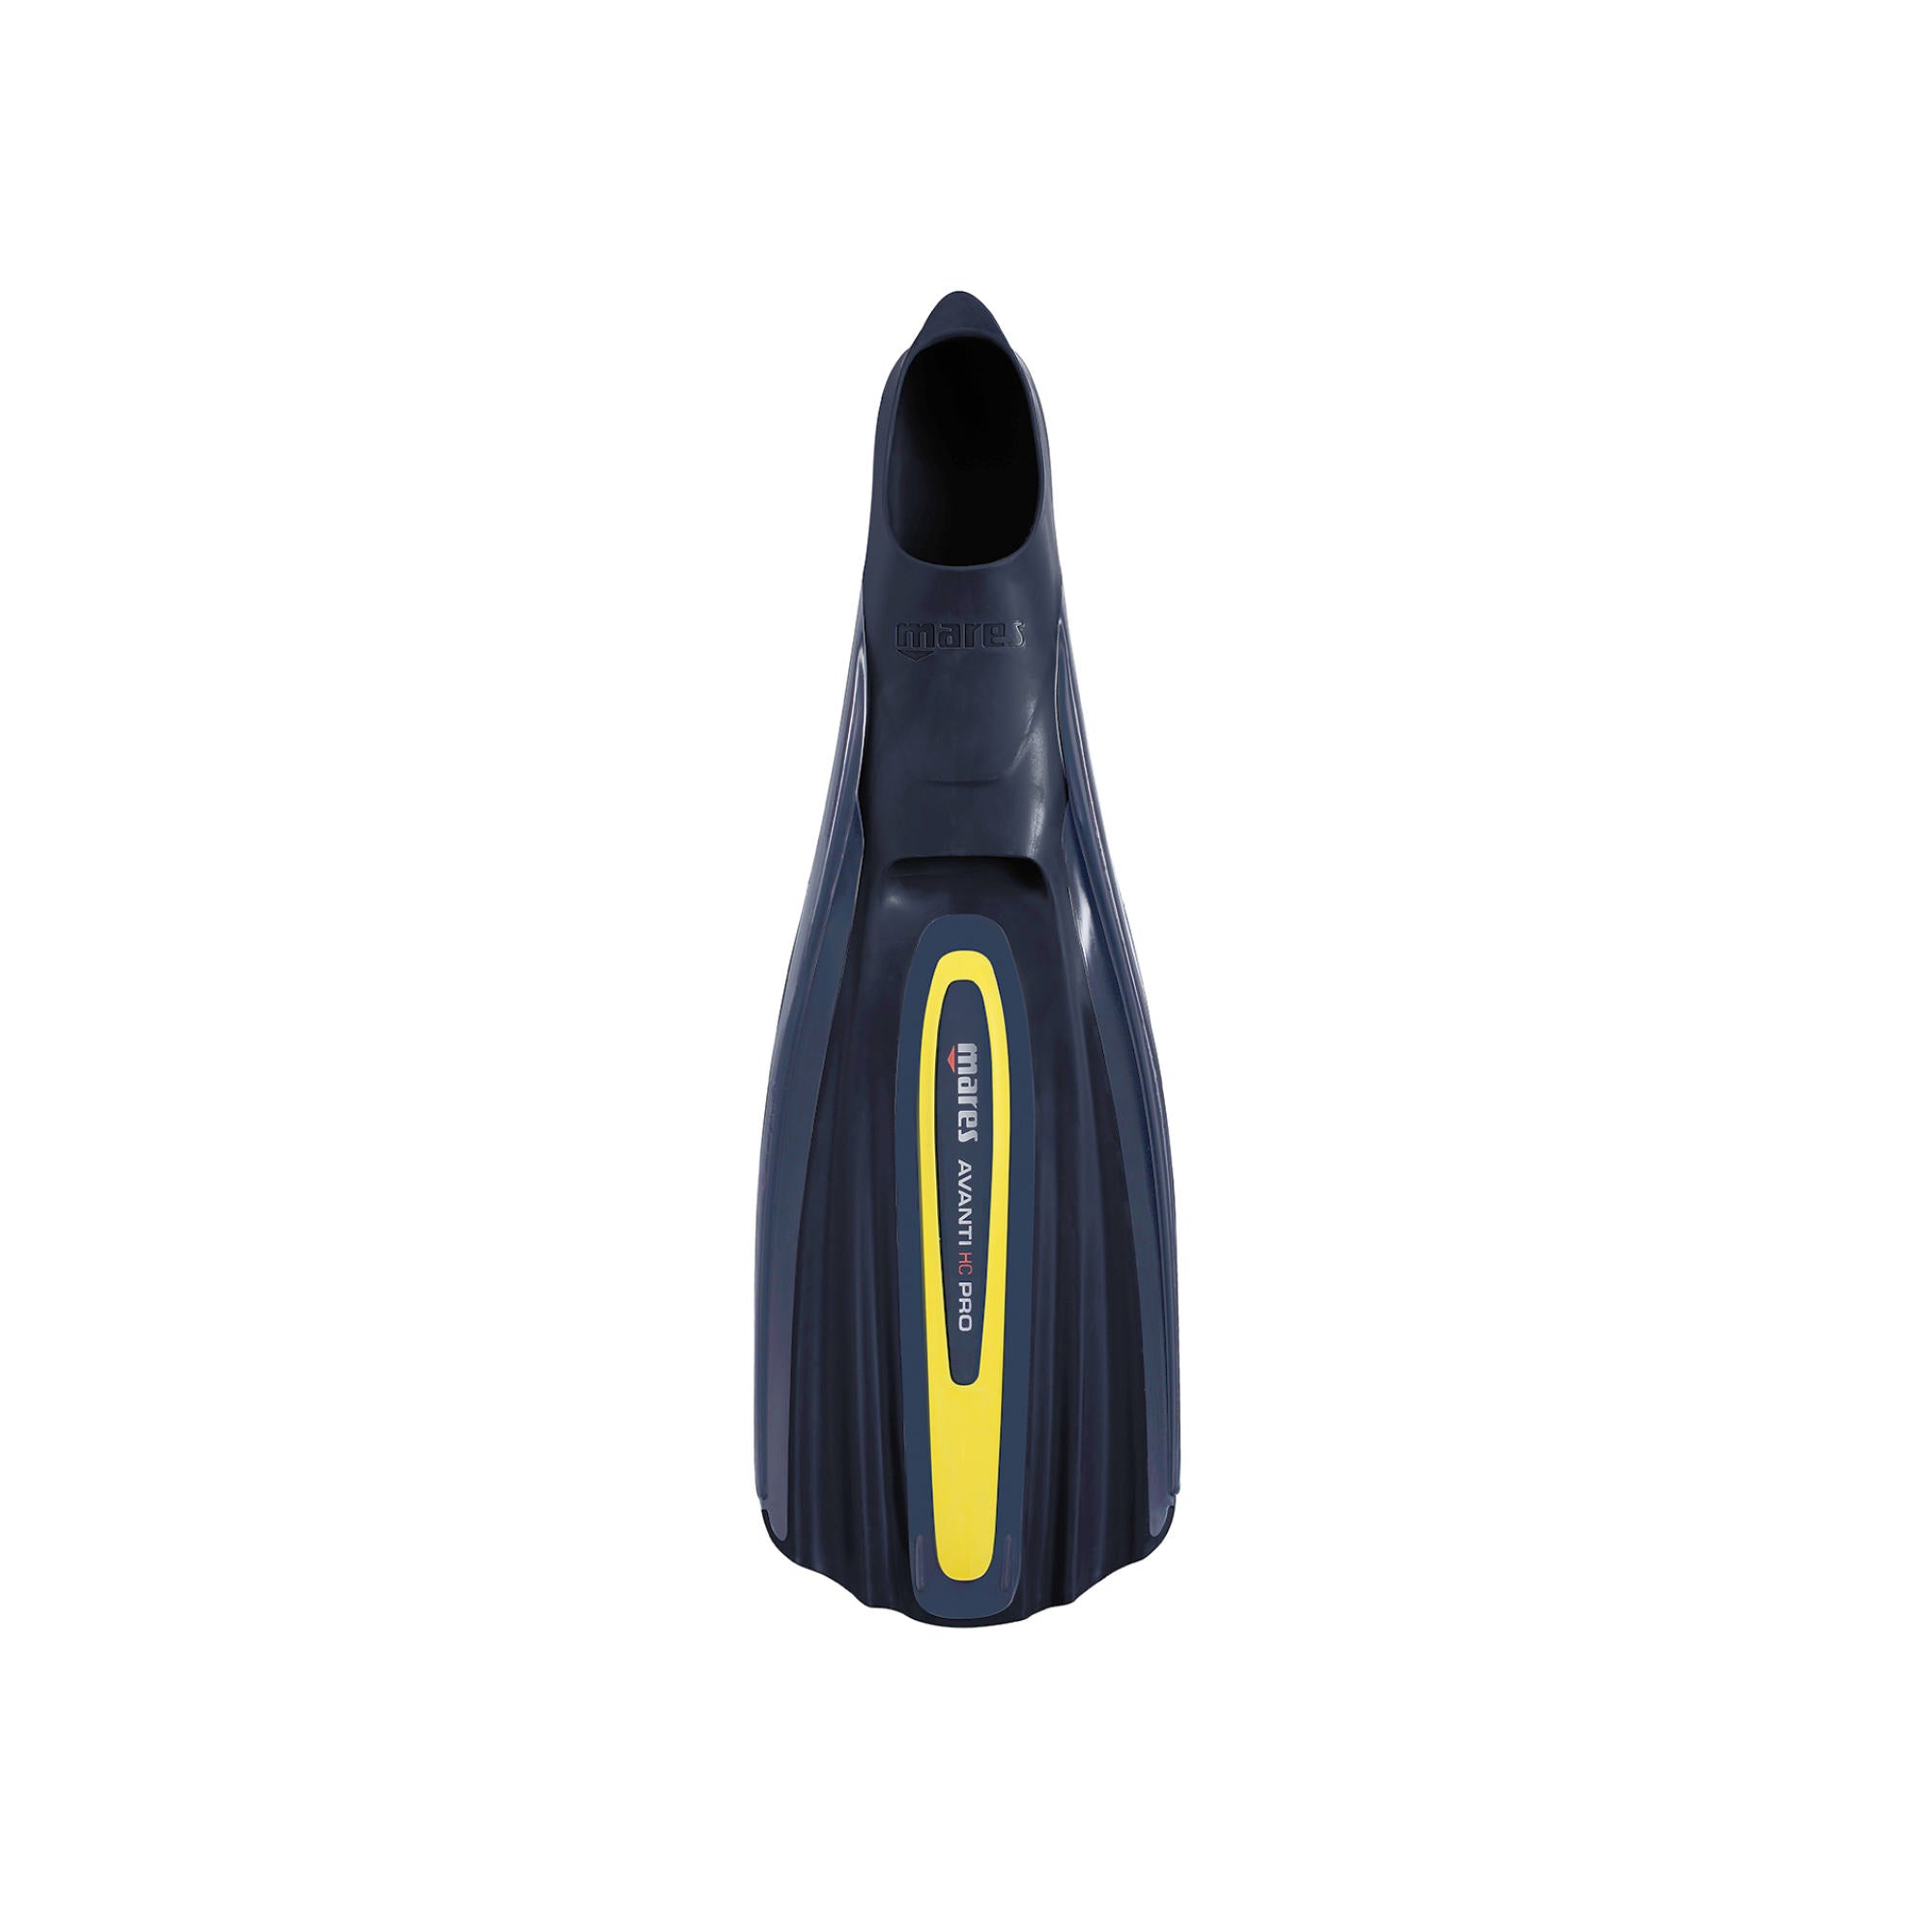 Schwimmflosse Avanti HC Pro von Mares in schwarz/gelb